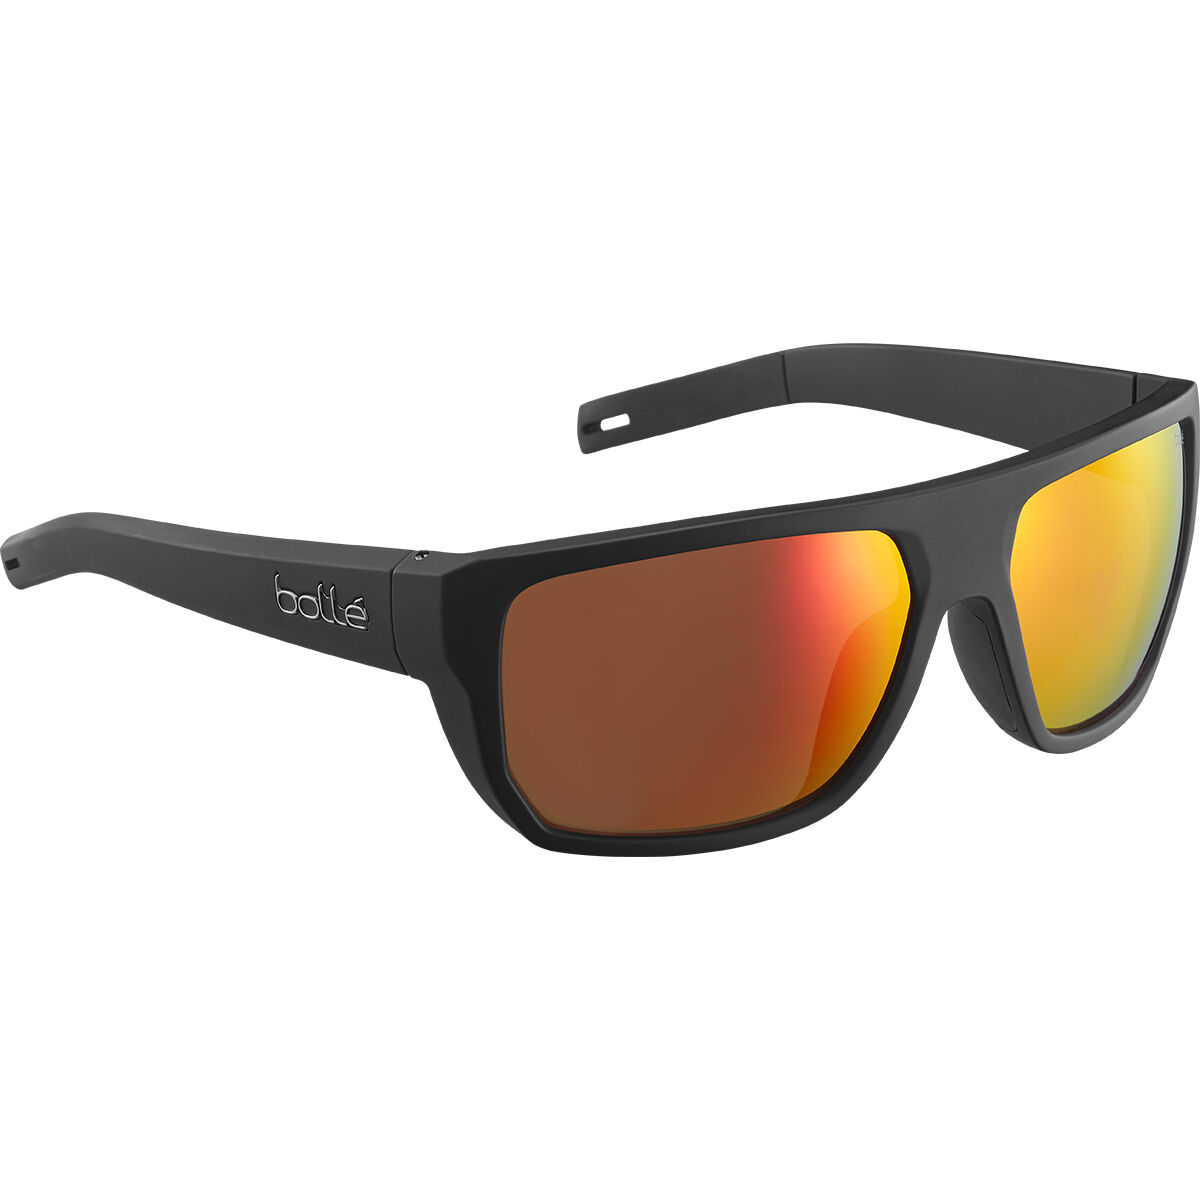 Bollé VULTURE Marine Sport Sunglasses - HD Polarized Lenses